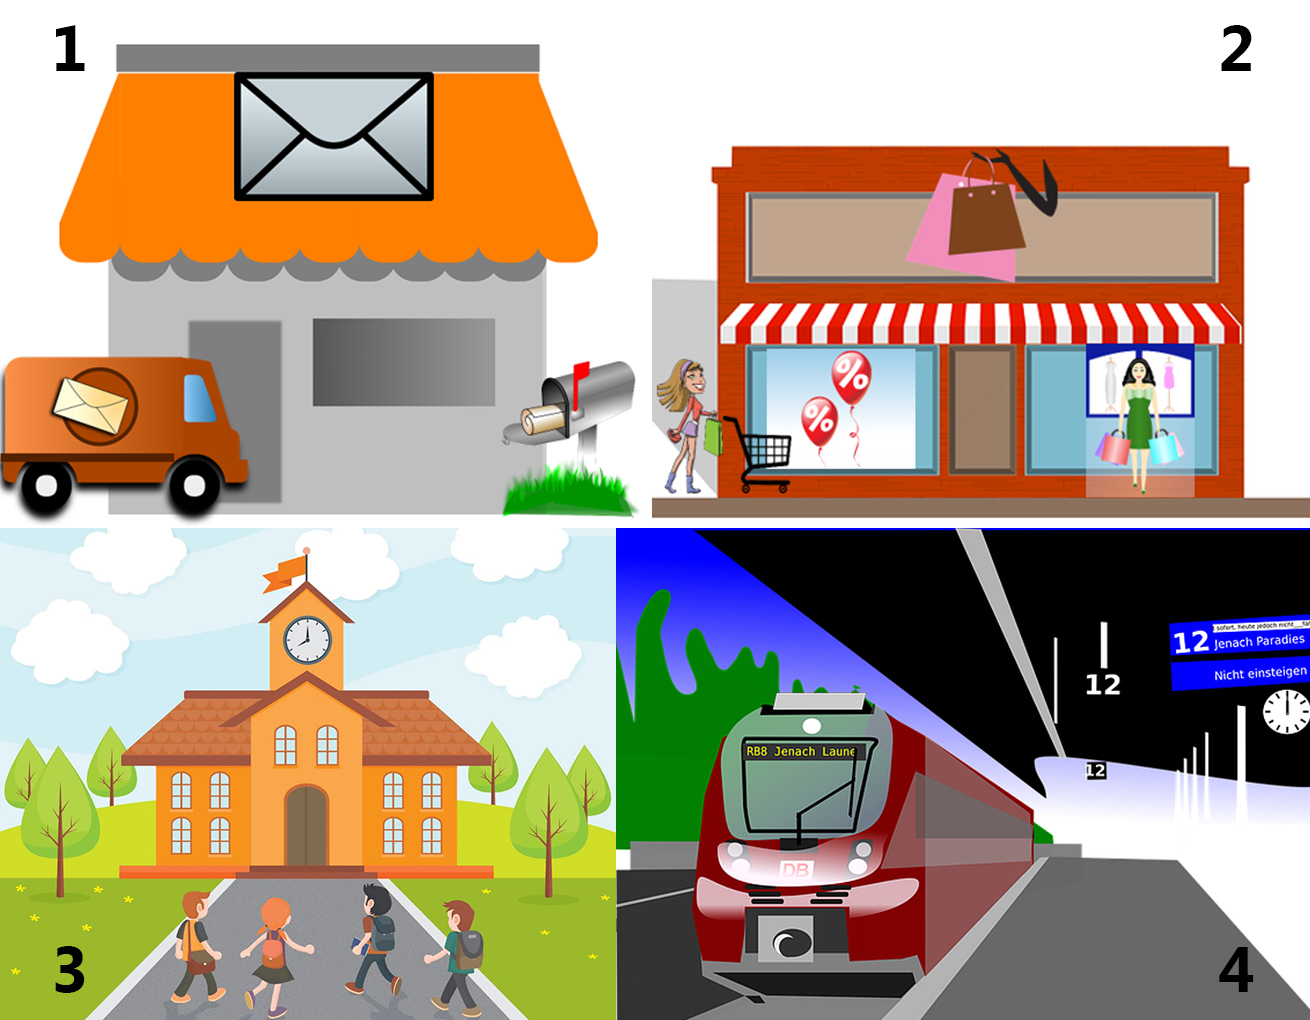 Ilustracijom se prikazuju četiri mjesta u gradu koja su numerirana: pošta (1), robna kuća (2), škola (3), kolodvor (4).